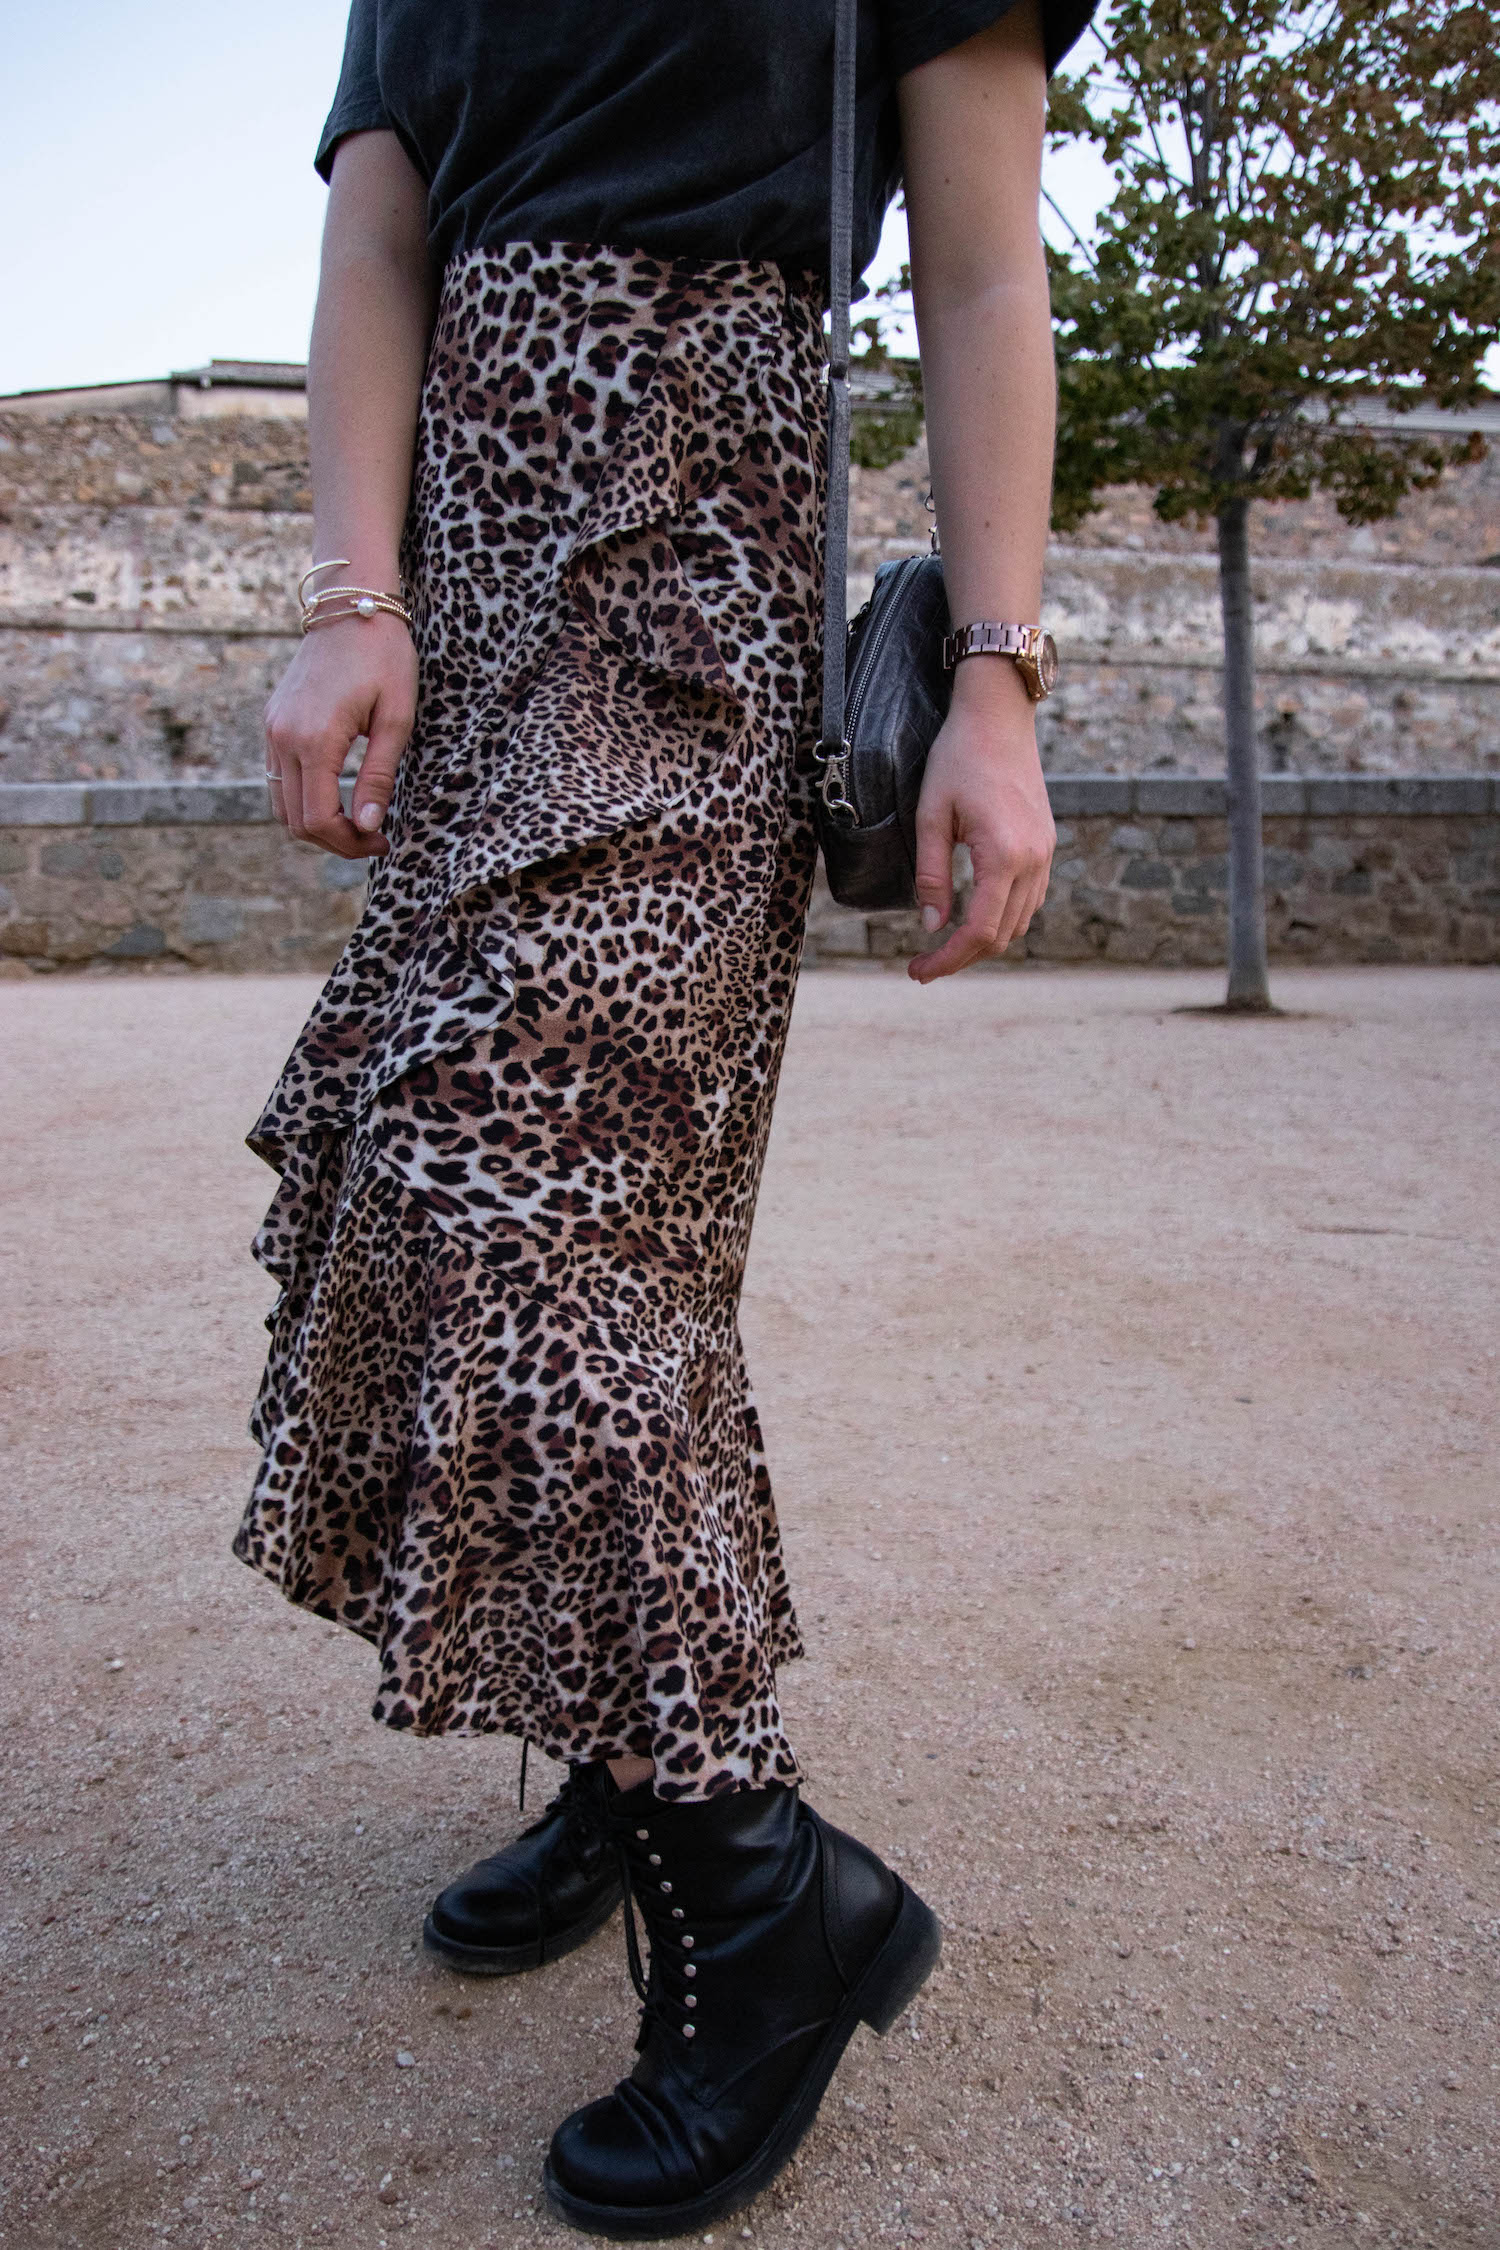 Comment porter la jupe midi léopard ? - happinesscoco.com